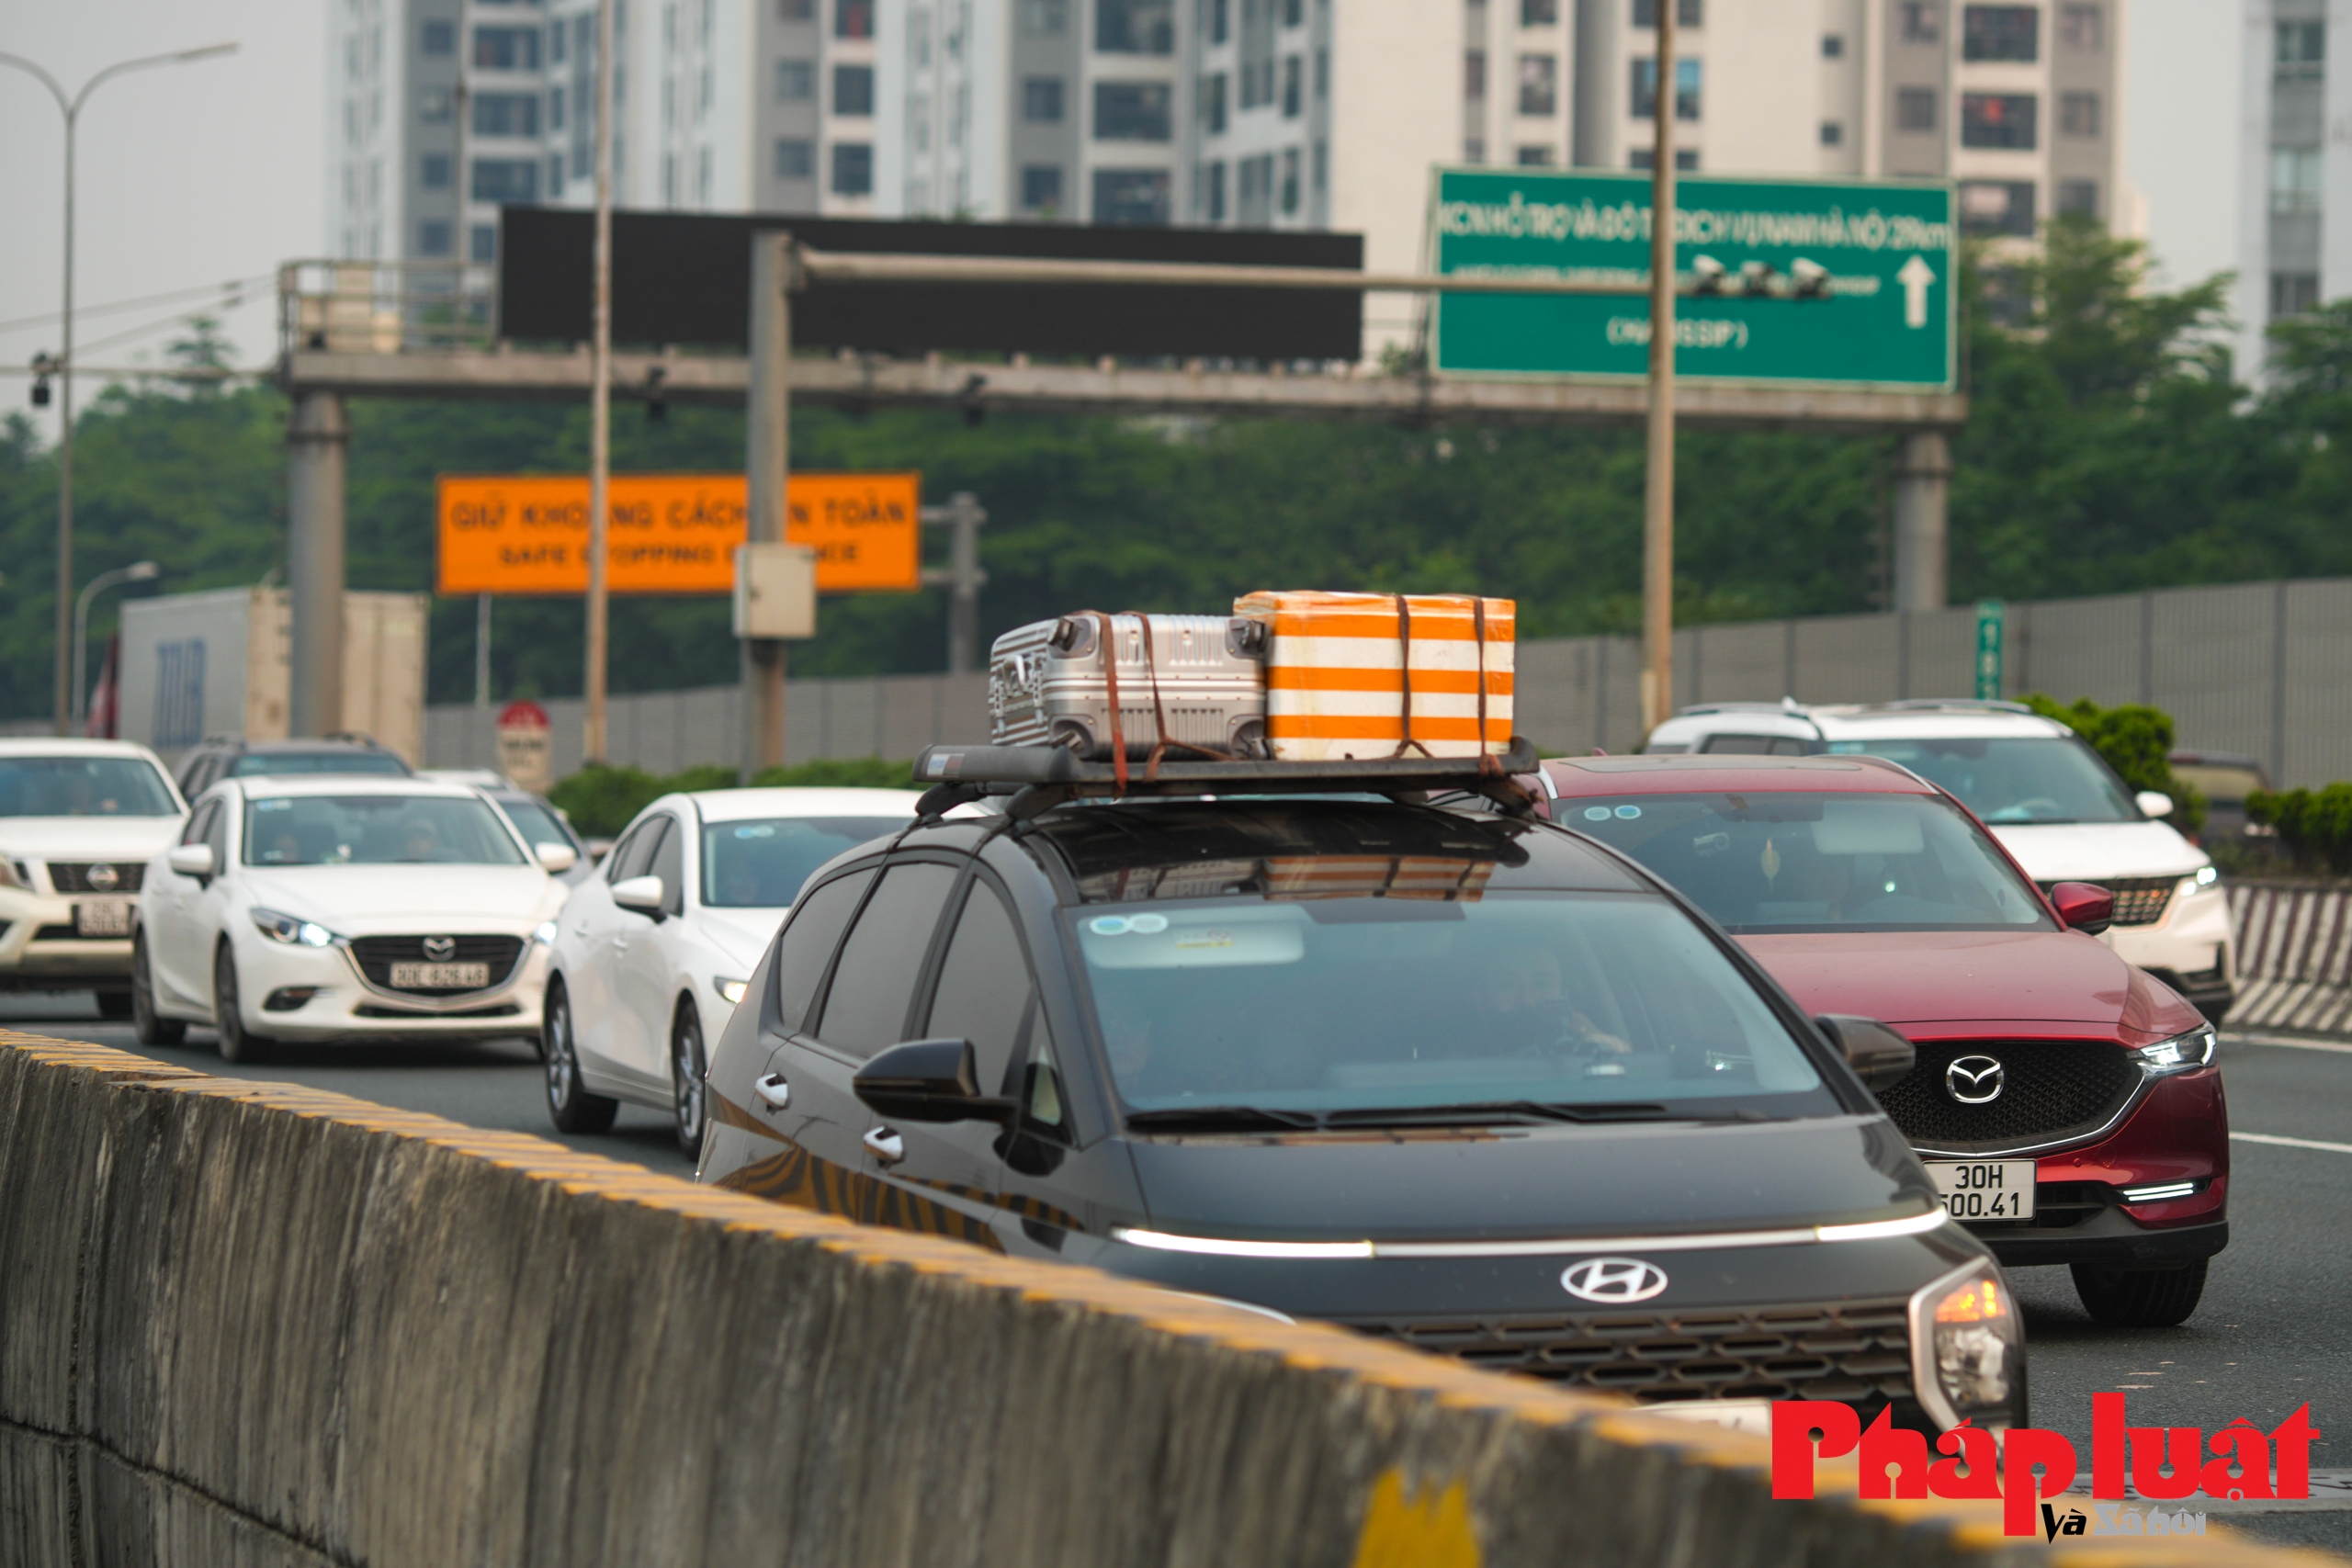 Trở lại Hà Nội sớm, nhiều người vẫn chịu cảnh tắc đường hàng km